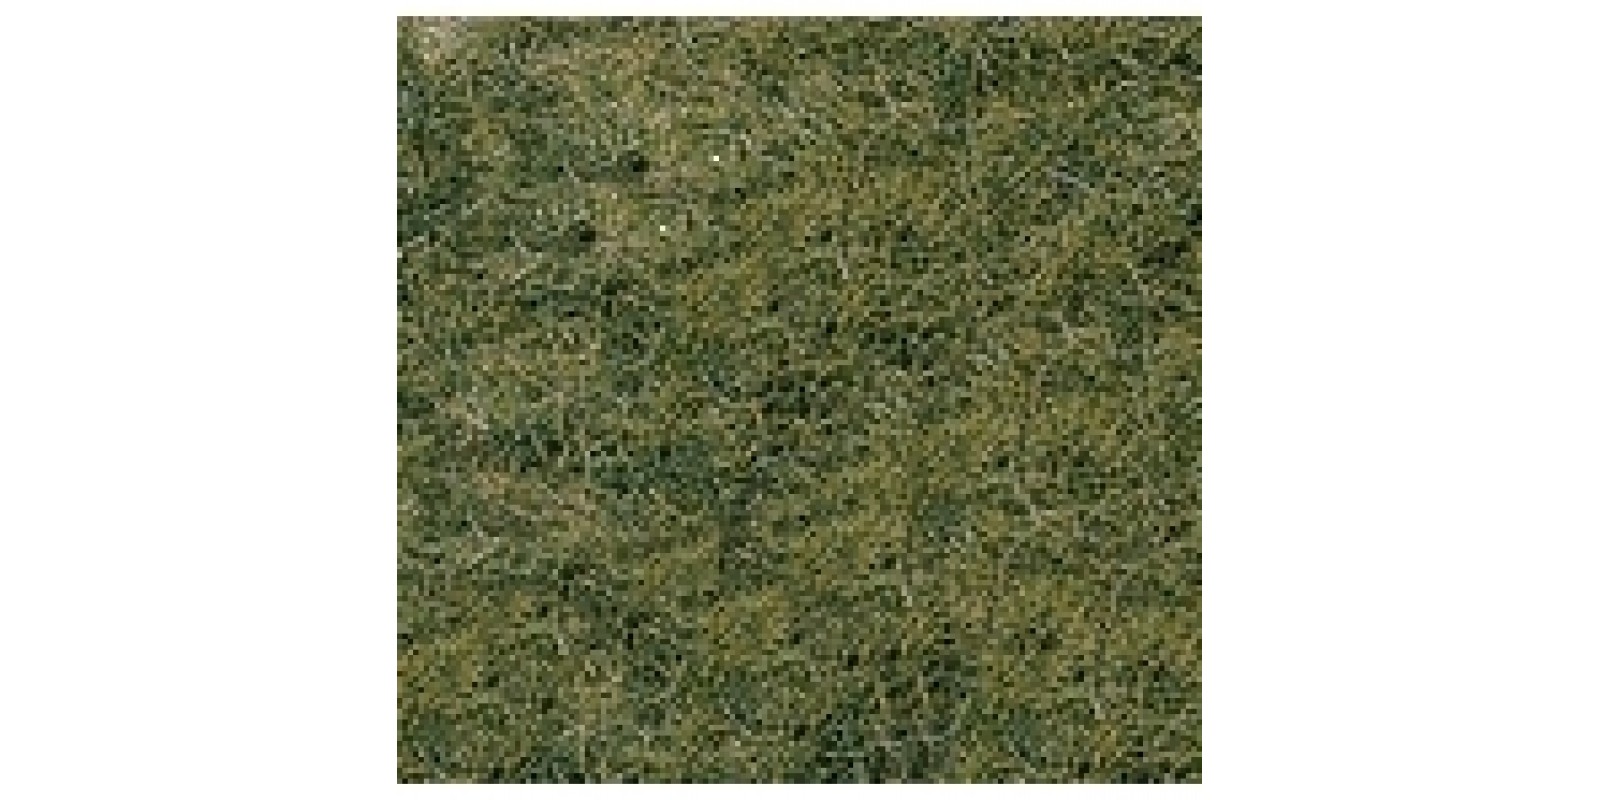 He1872 2 wild grass mat mountain meadow, 40x25cm